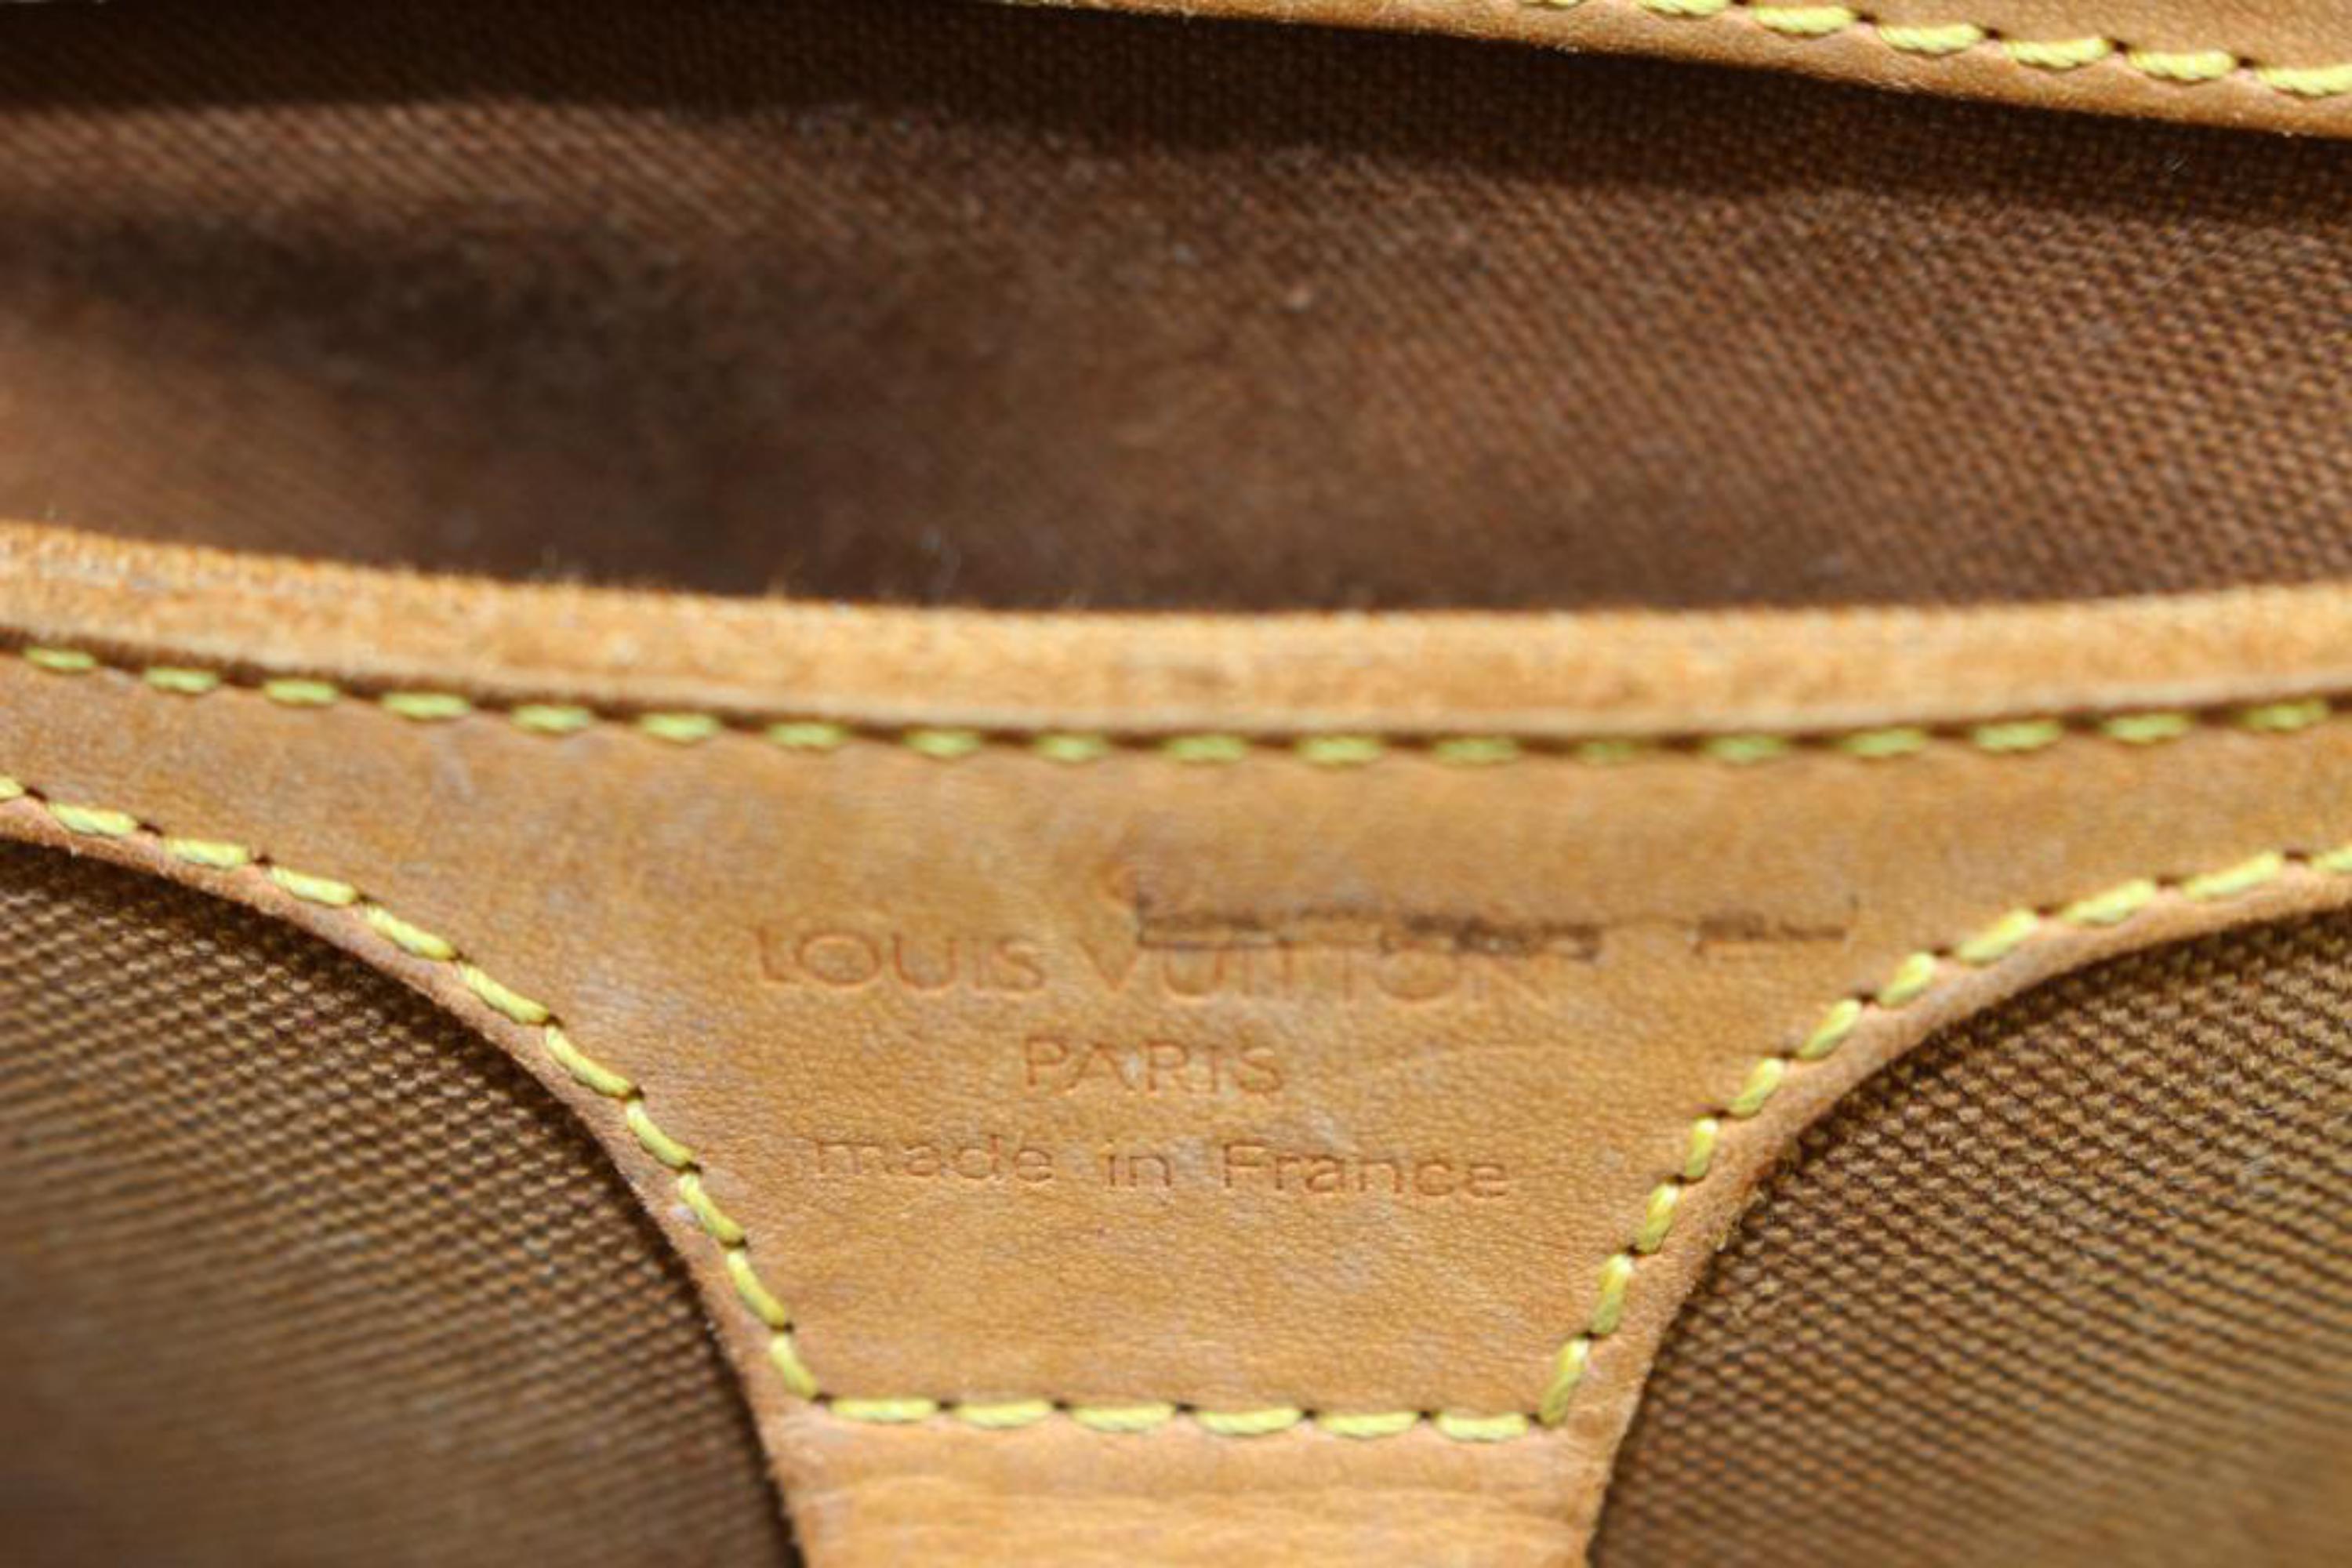 Louis Vuitton Monogram Ellipse Sac a Dos Rucksack mit Monogramm 41lk70 1